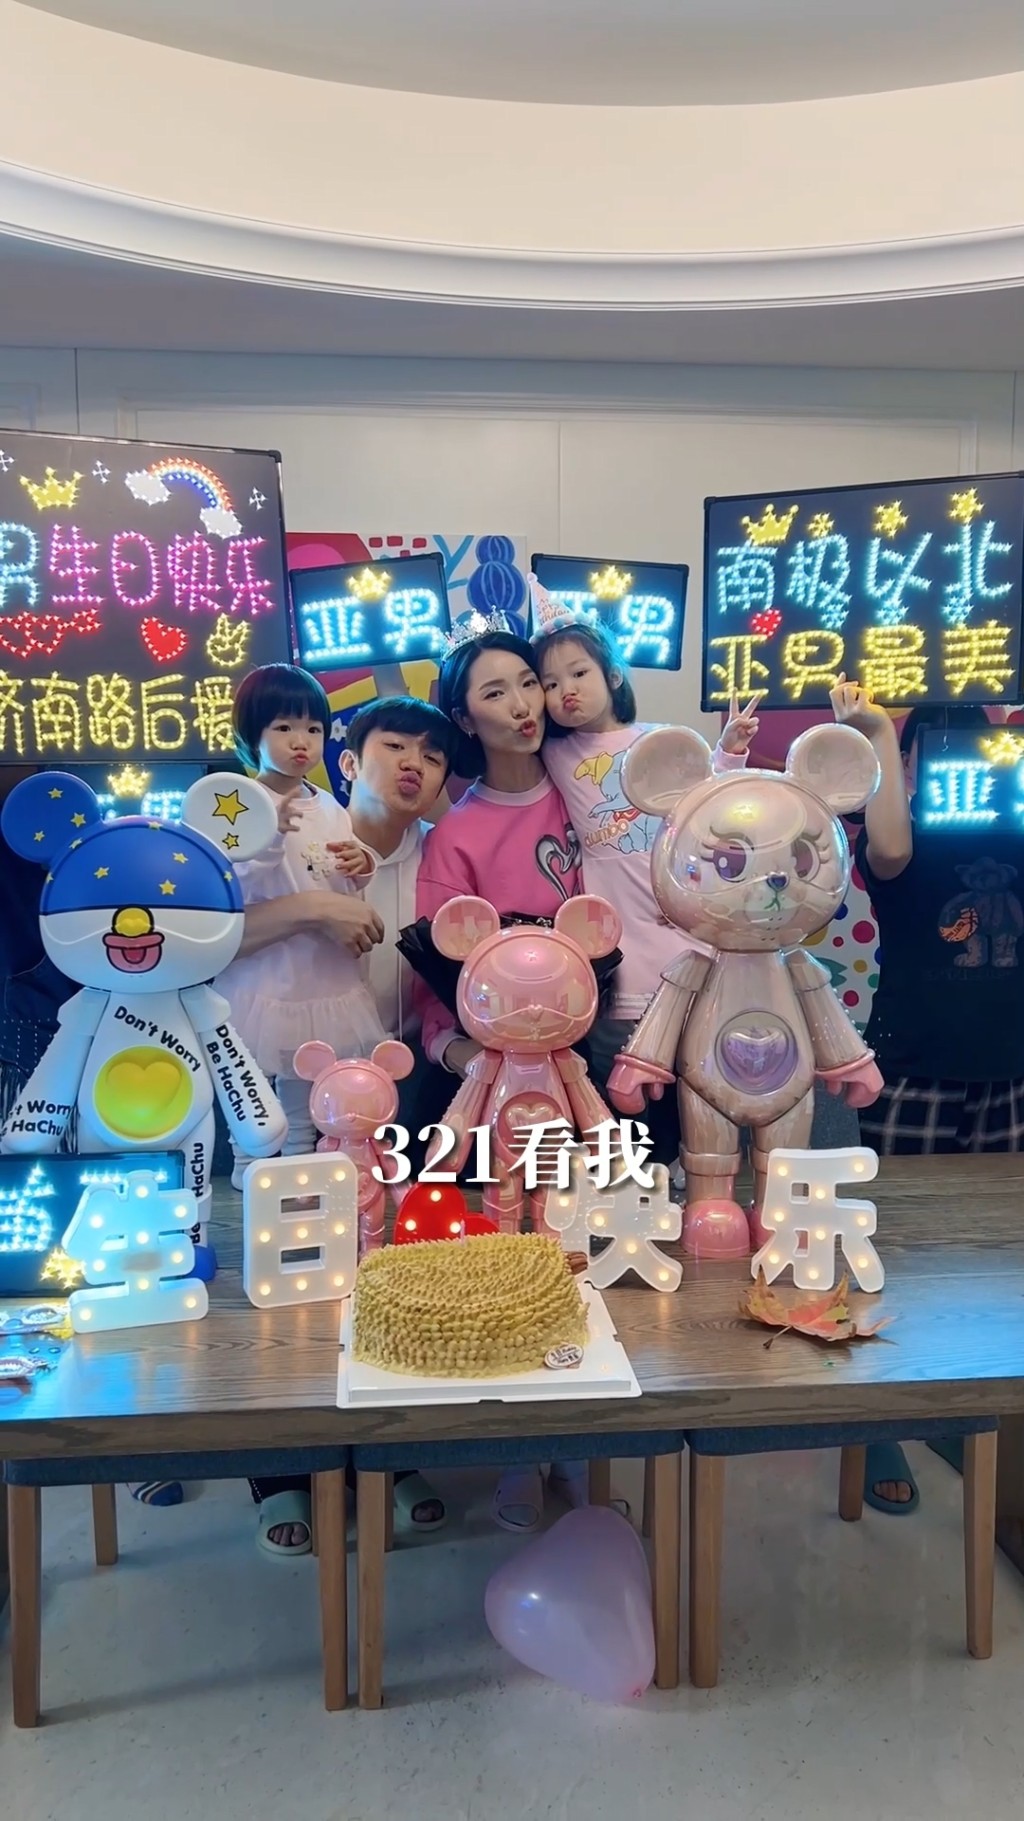 王祖蓝与李亚男的两个囡囡、陈小春与应采儿9岁儿子Jasper、吴尊一对子女目前亦正就读上海耀中。